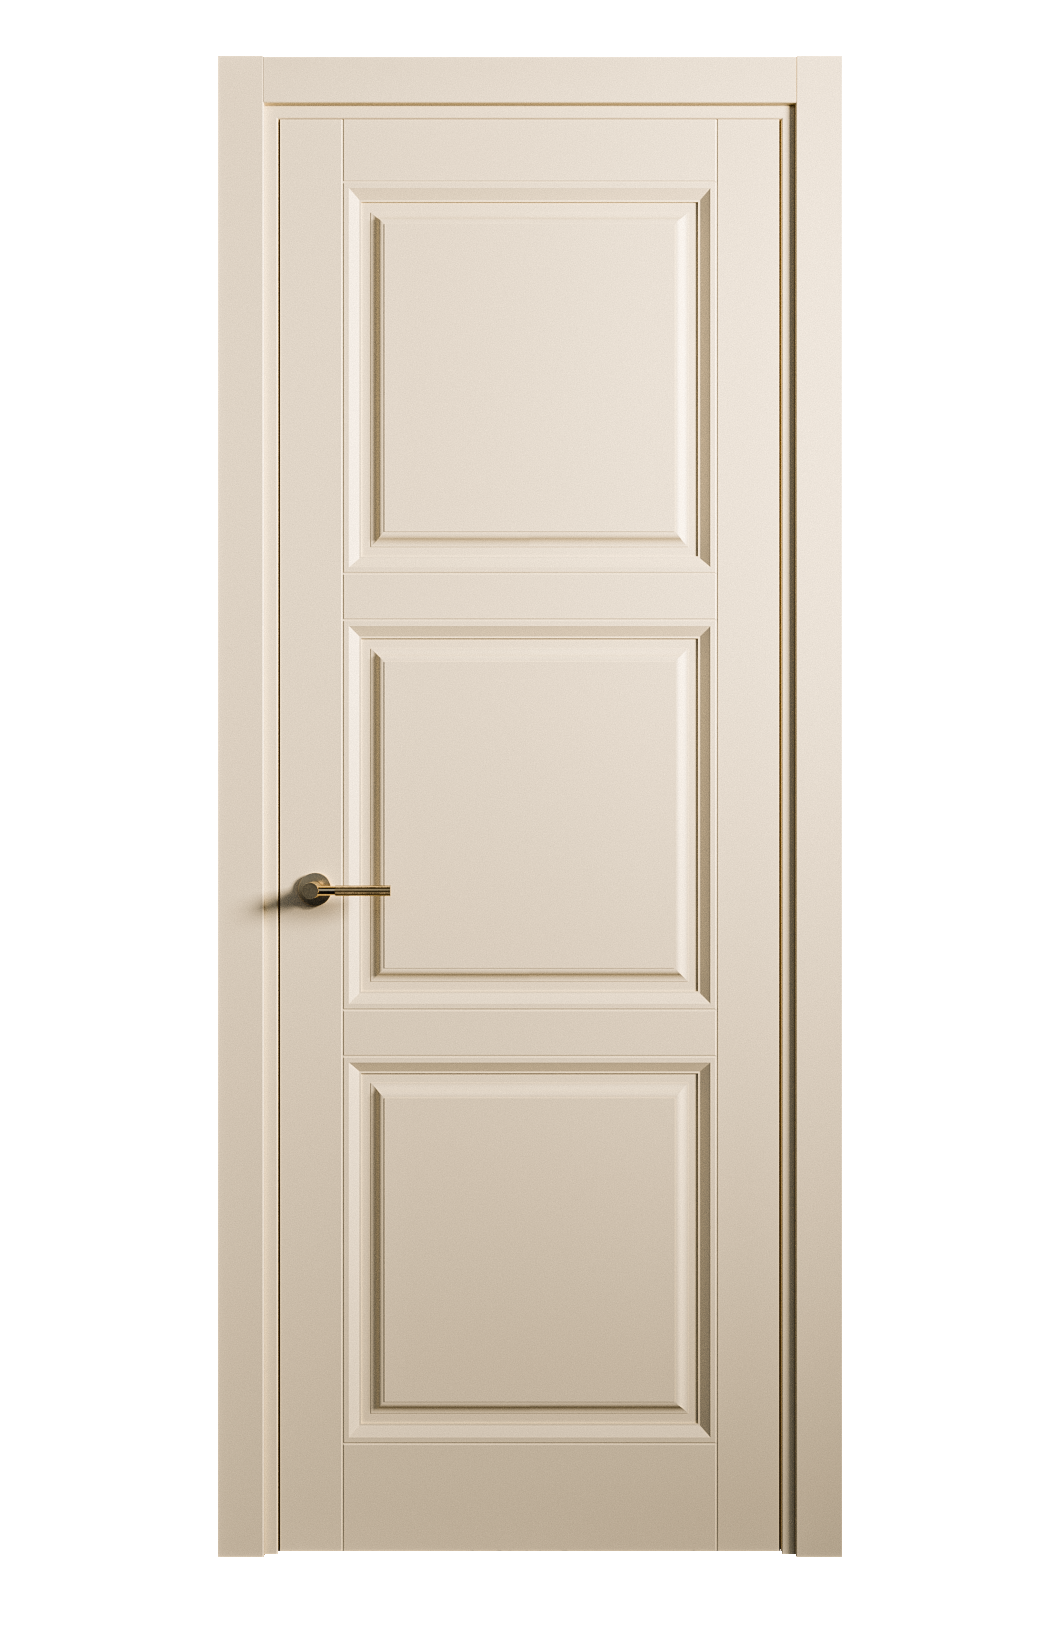 Межкомнатная дверь Venezia-3 глухая эмаль ral 1015 25717